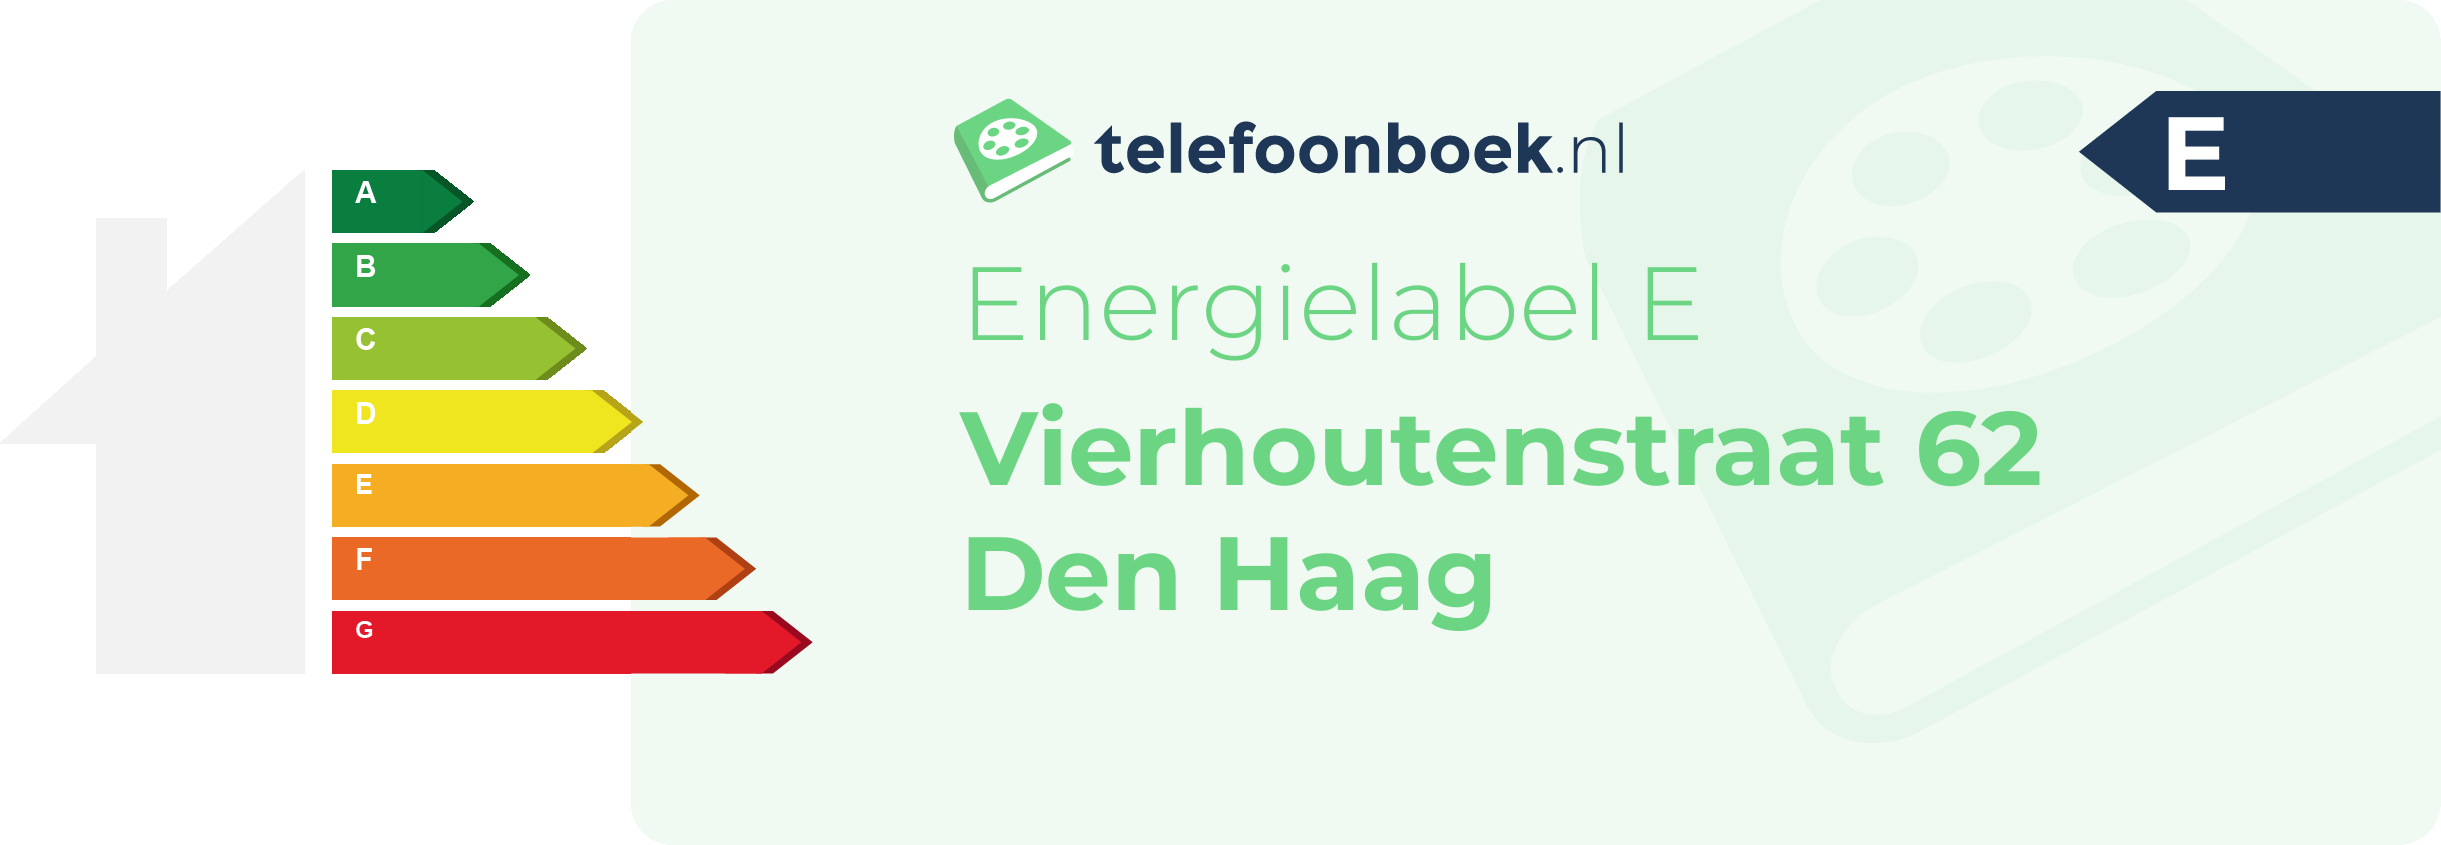 Energielabel Vierhoutenstraat 62 Den Haag